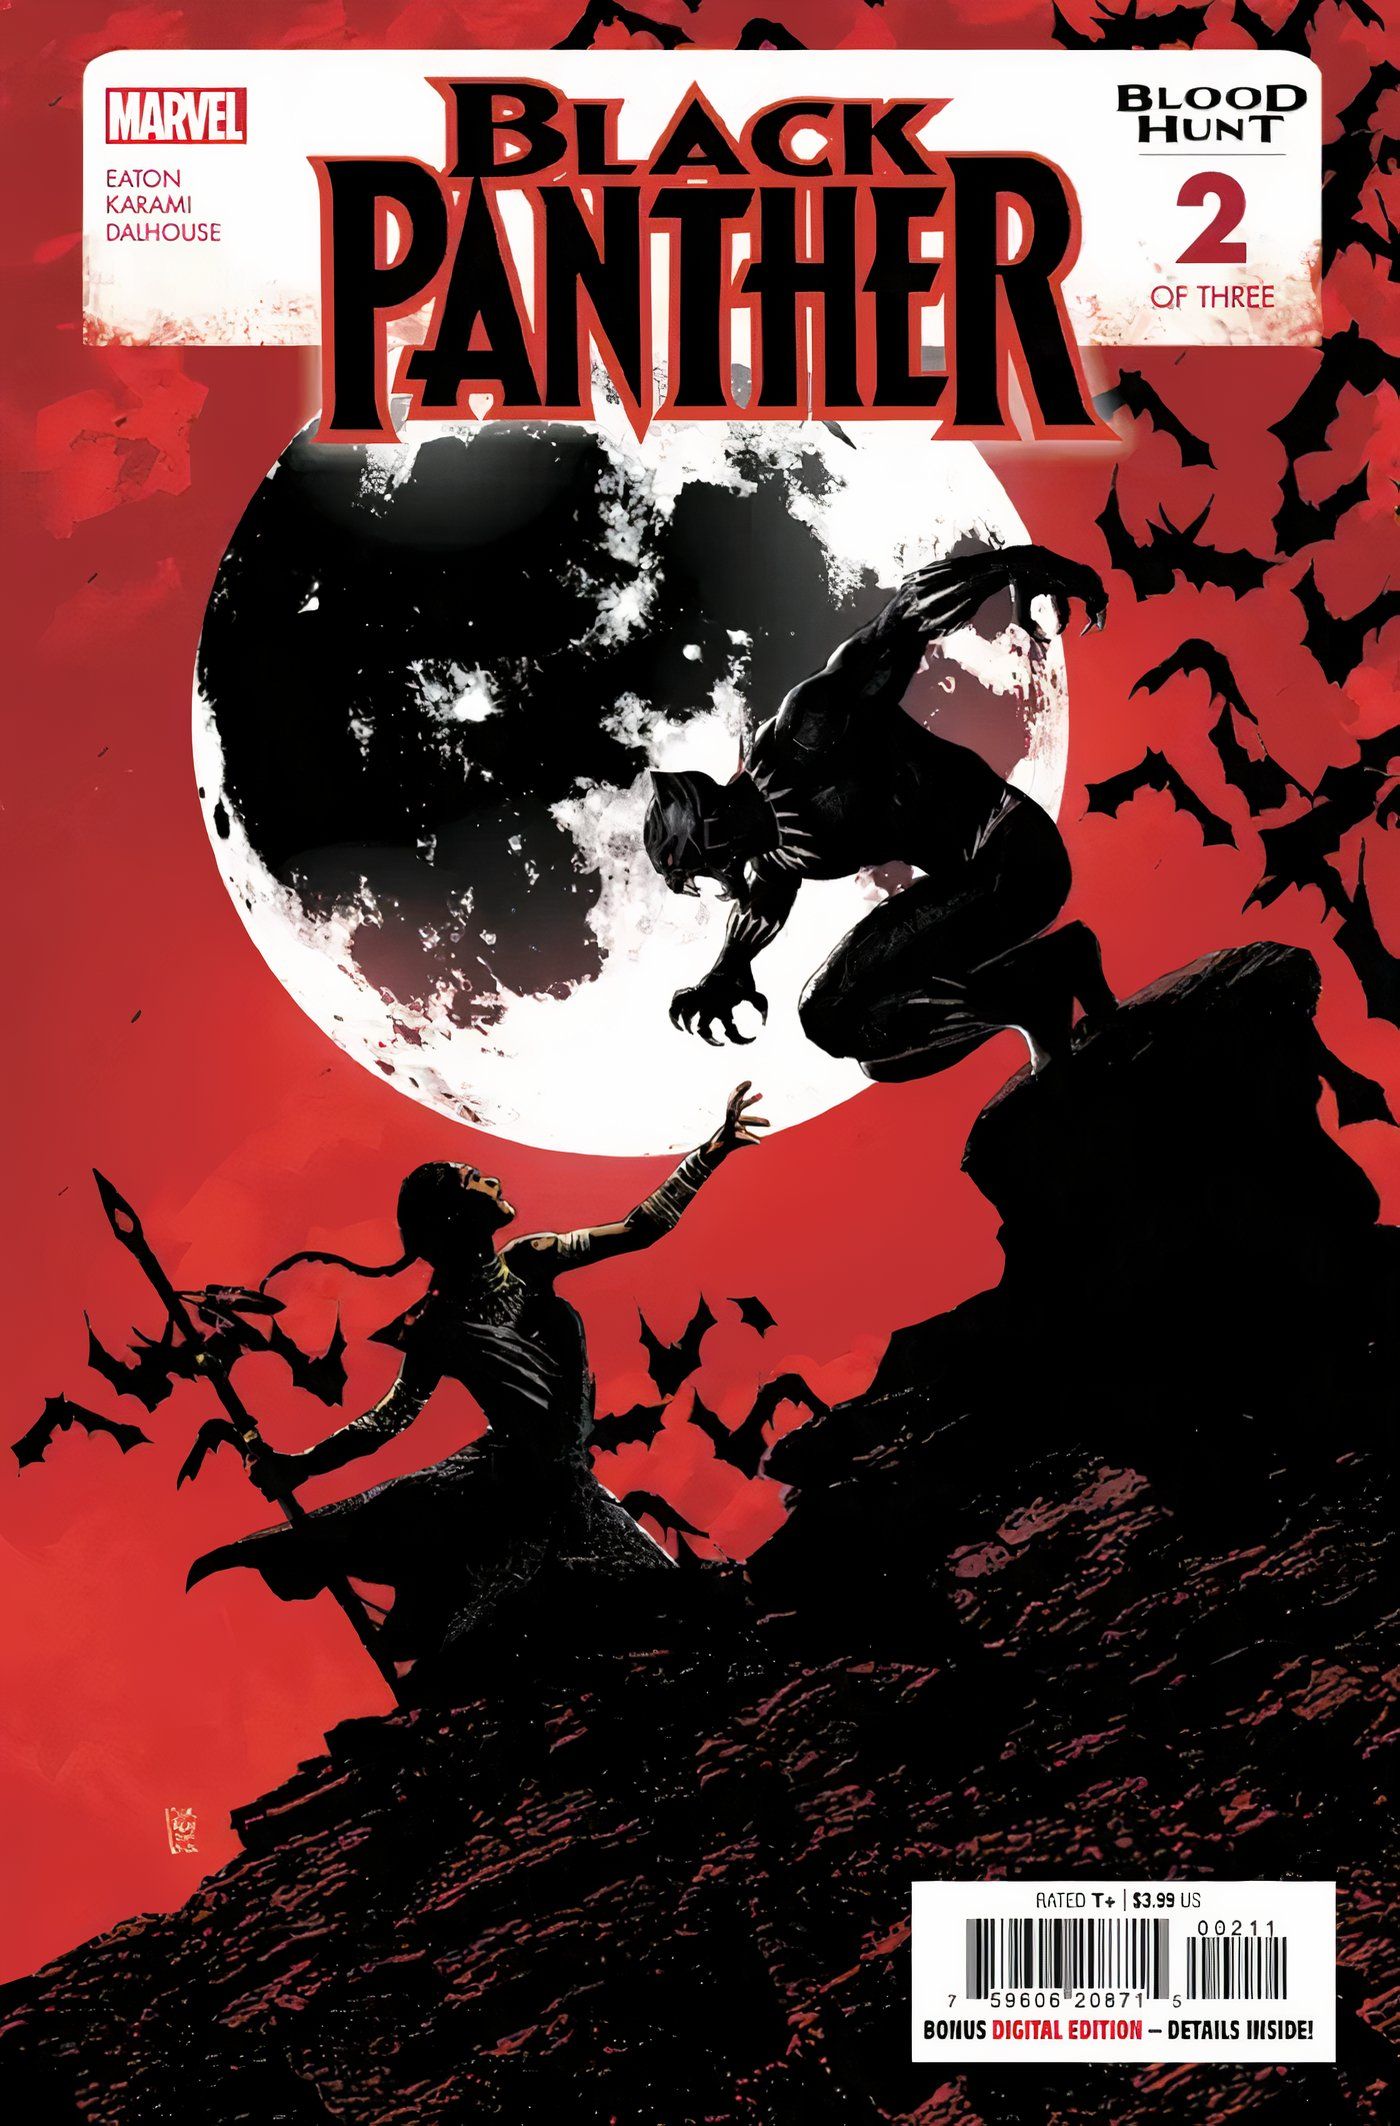 Capa de visualização do Black Panther Blood Hunt 2